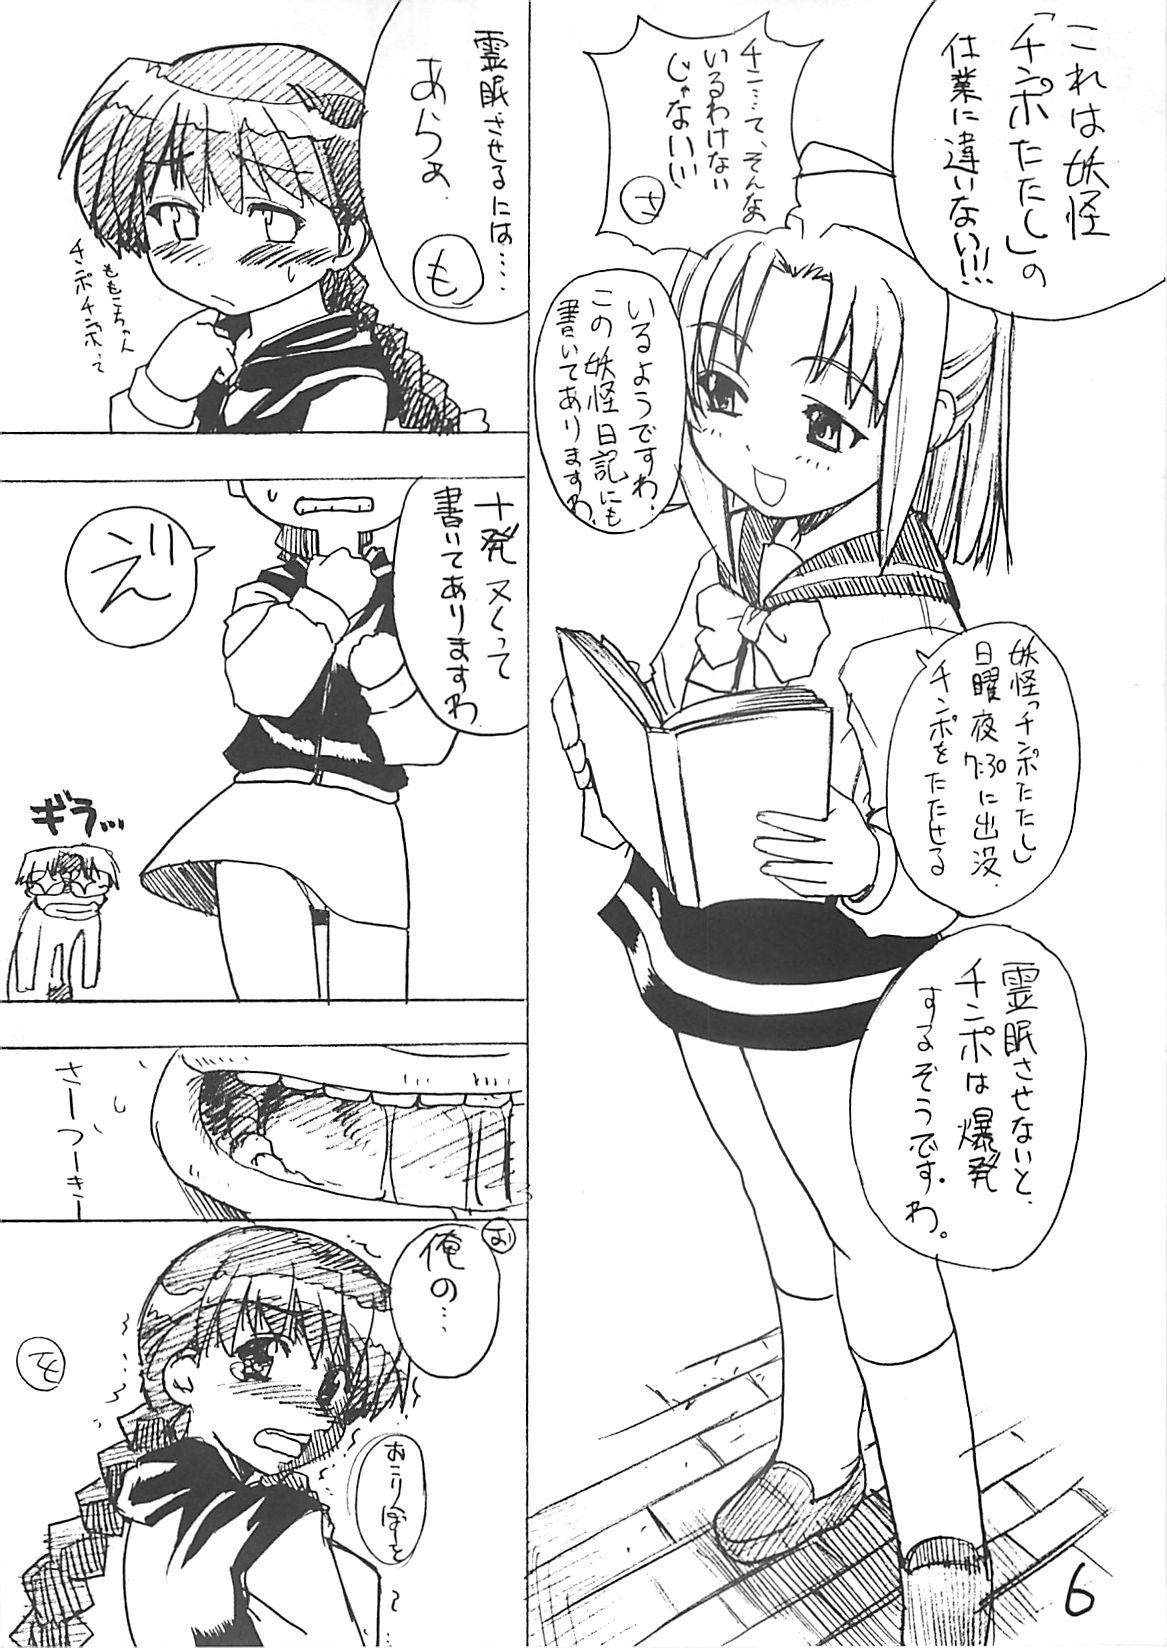 Party Takehara Style - Gakkou no kaidan Teenies - Page 5